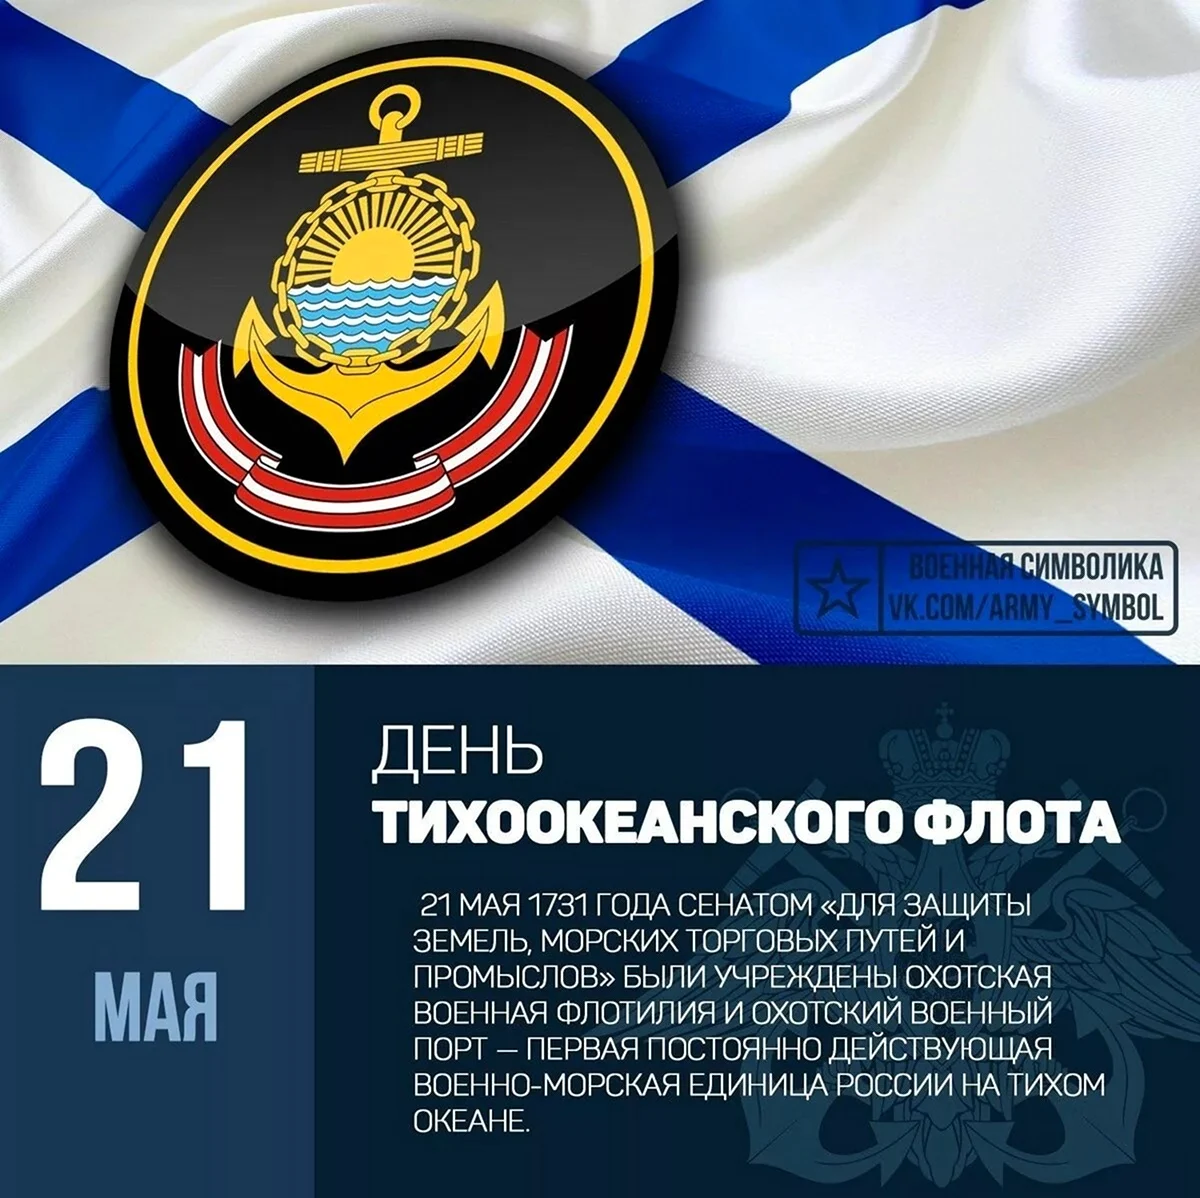 13 Мая день Черноморского флота ВМФ России. Поздравление